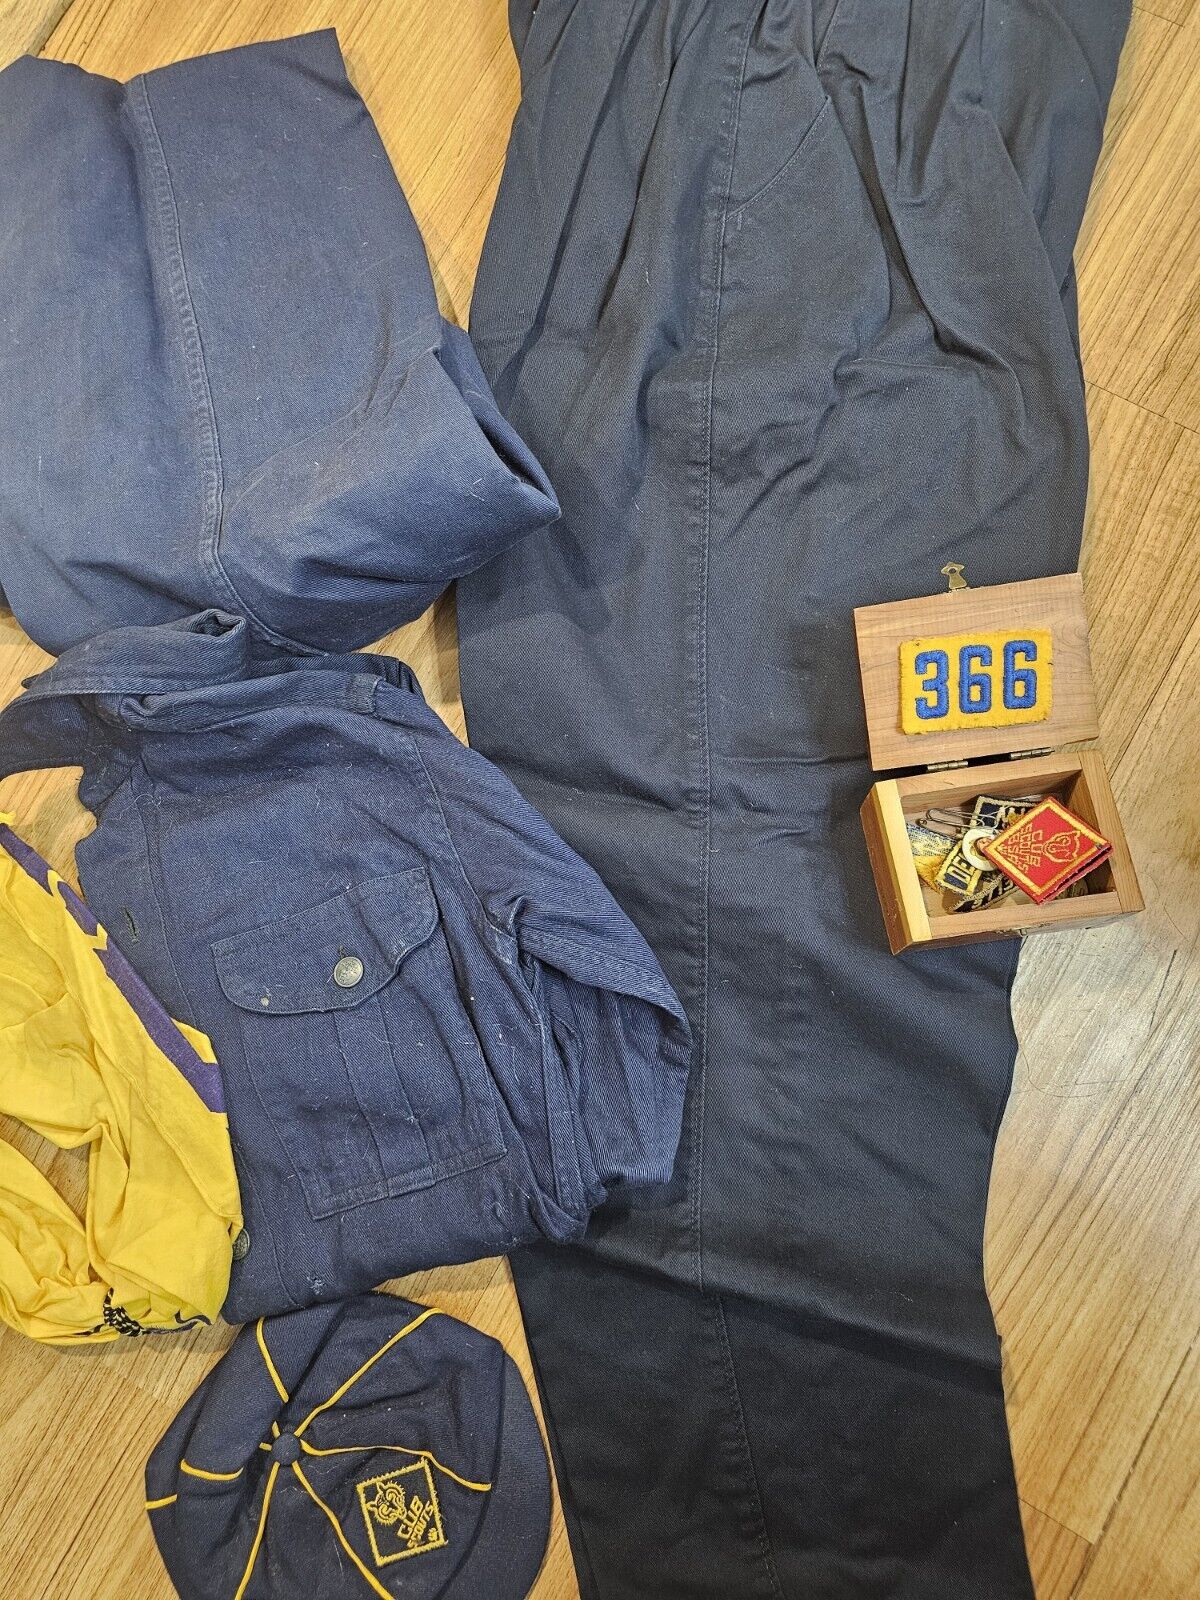 Vintage Cub Scout Uniform Hat Shirt Pants and Patches Set Boy Blue Yellow